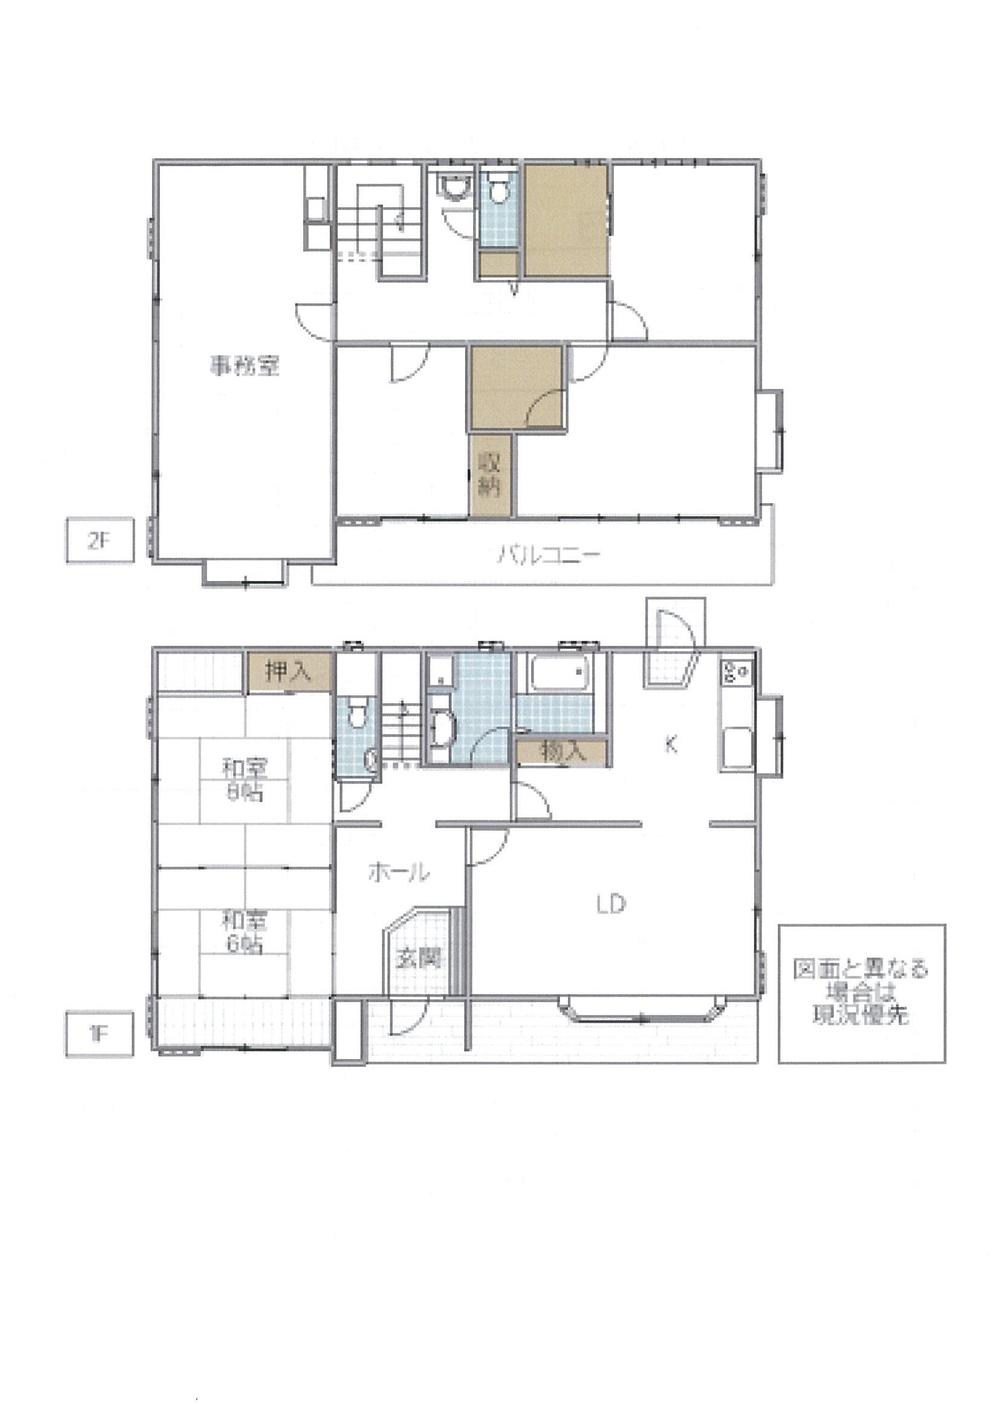 Floor plan. 26,800,000 yen, 6LDK + 2S (storeroom), Land area 207.56 sq m , Building area 178.86 sq m